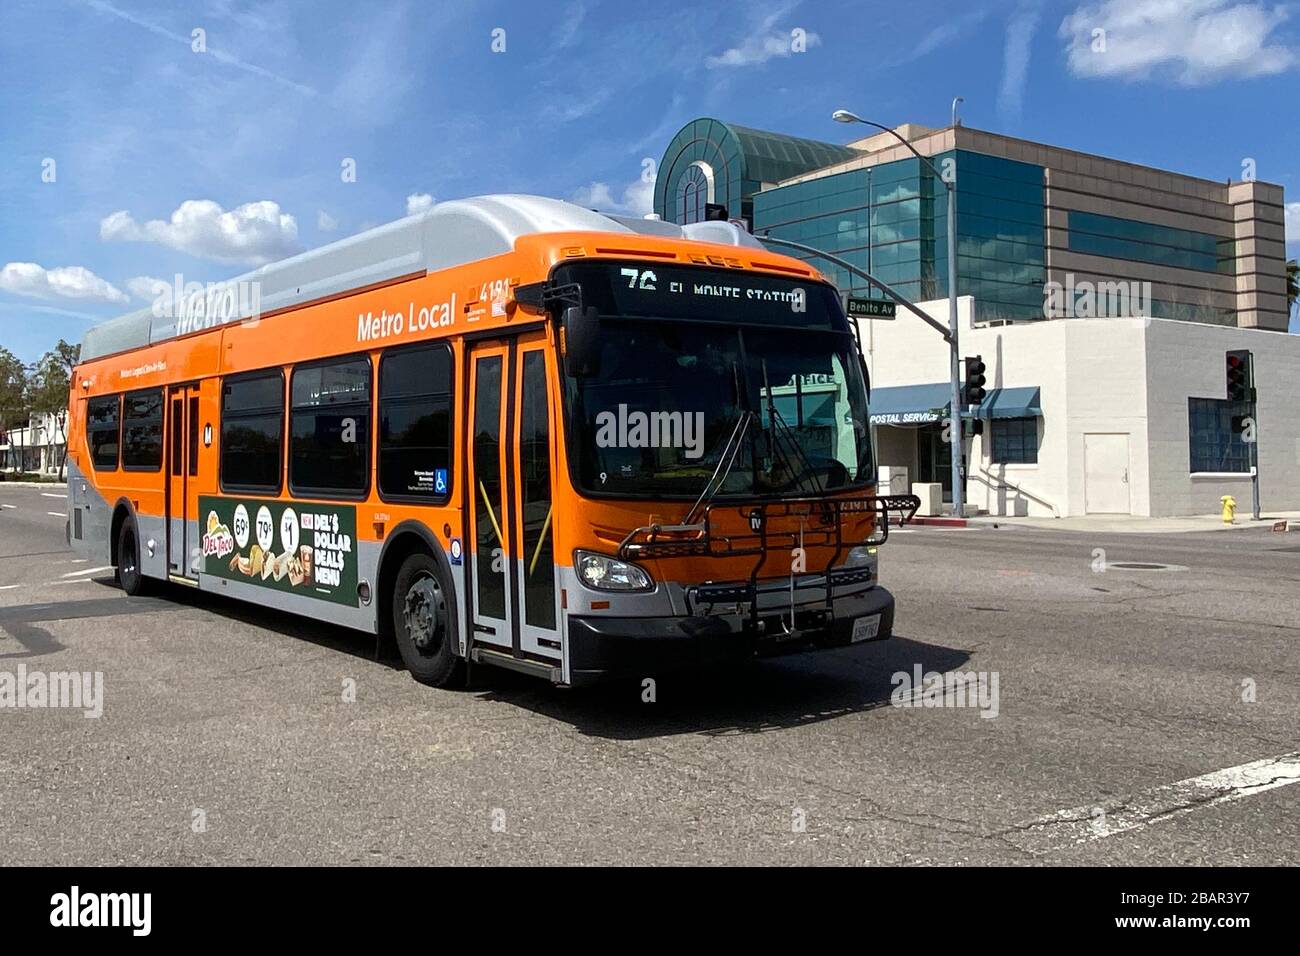 Un autobus locale Metro su Valley Blvd, in mezzo al coronavirus globale COVID-19 pandemia, Sabato, 28 marzo 2020, in Alhambra, California, Stati Uniti. (Foto di IOS/Espa-Images) Foto Stock